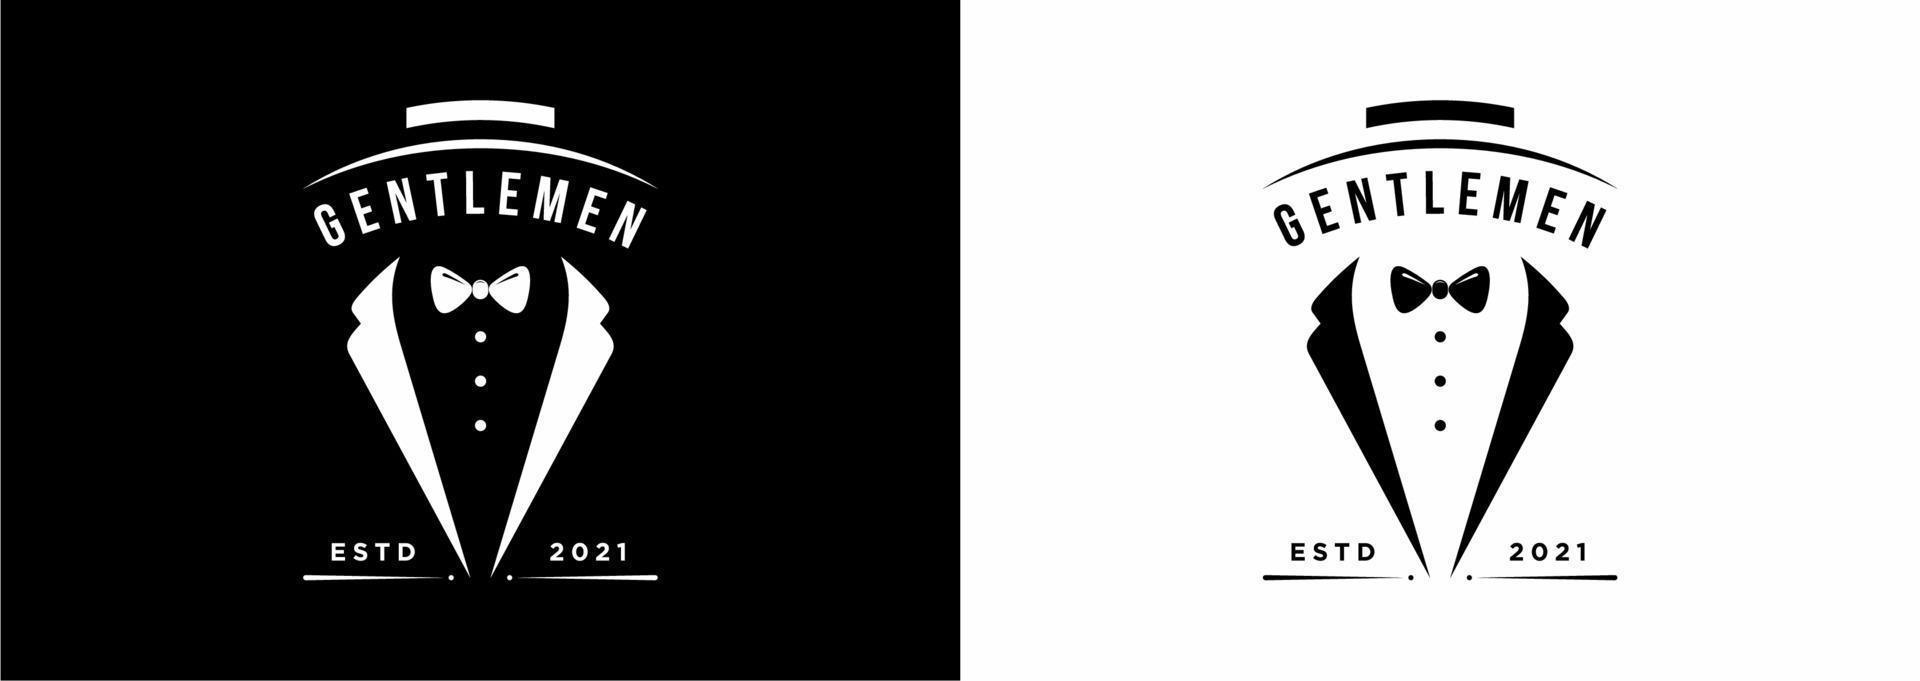 Gentleman-Krawattenillustrations-Logo-Design-Vektorvorlage vektor